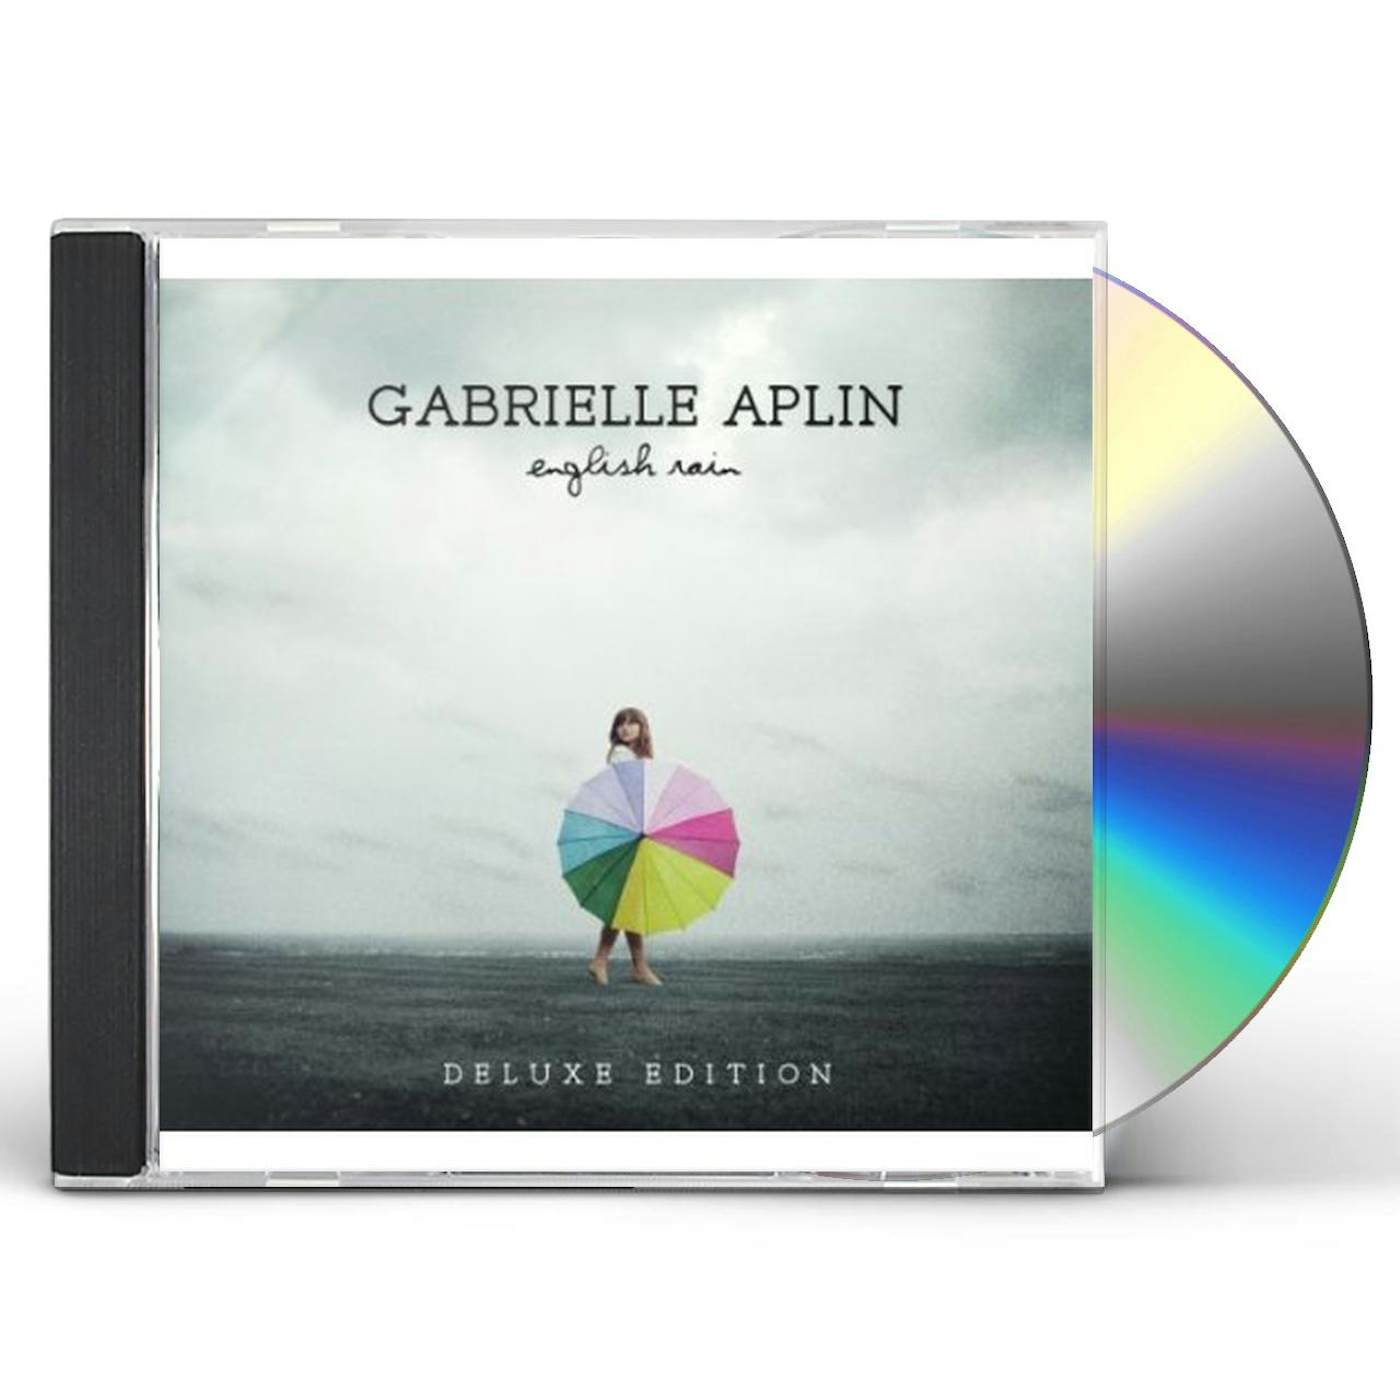 Gabrielle Aplin ENGLISH RAIN CD